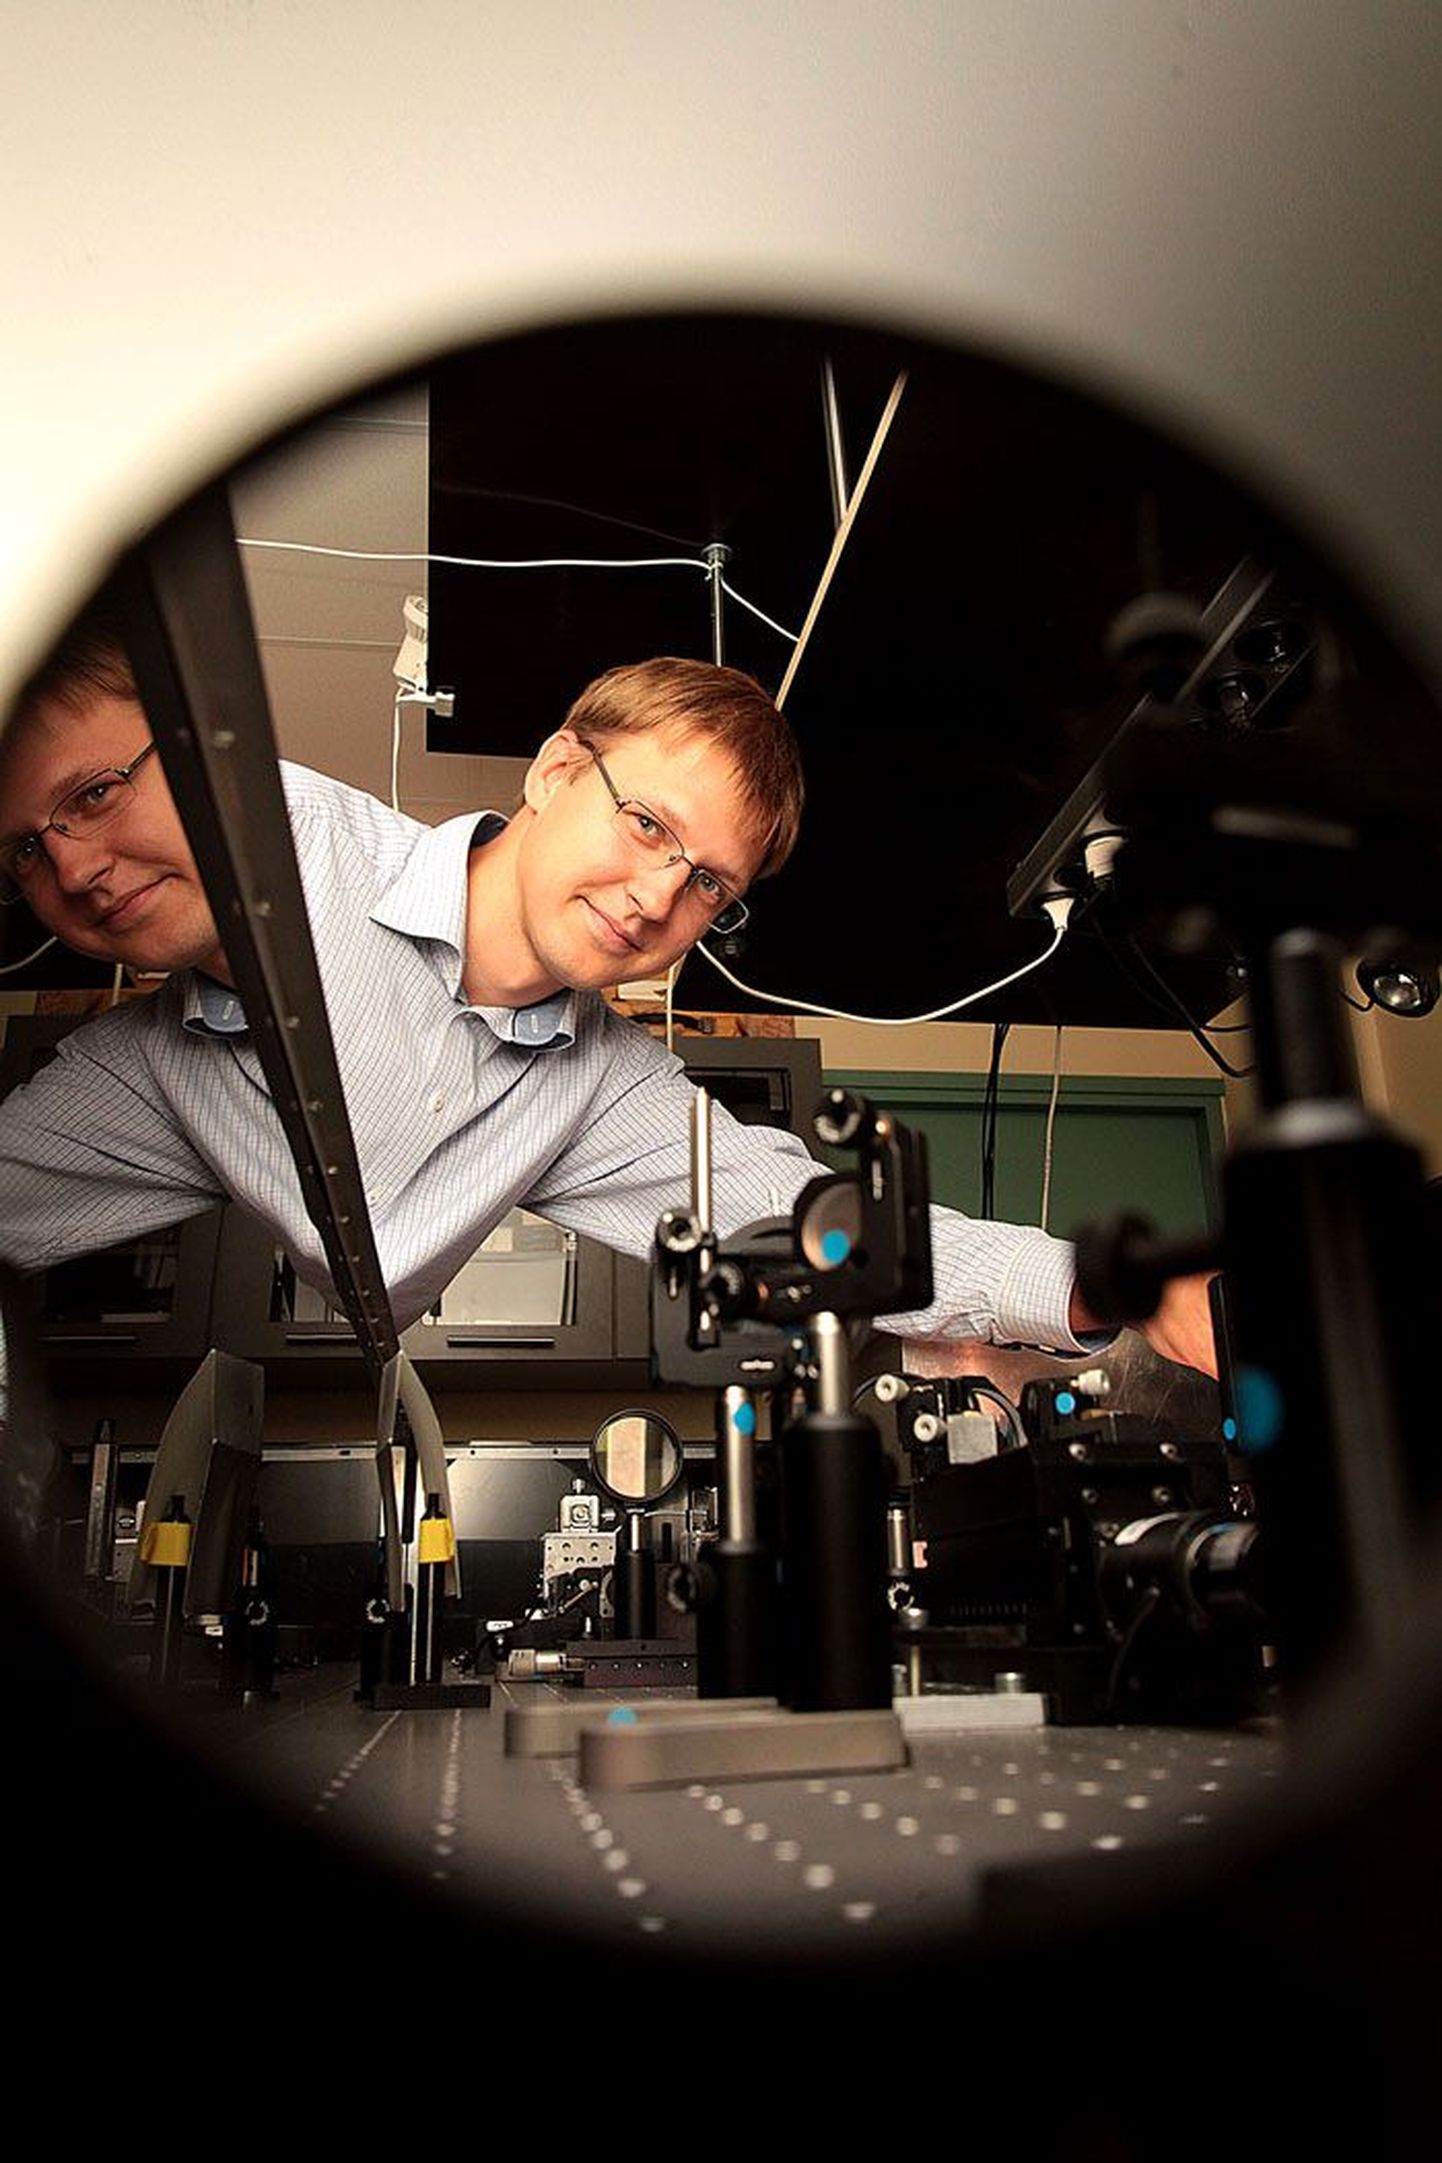 TÜ füüsikainstituudi füüsikalise optika laboris näidati 1997. aastal esimest korda eksperimentaalselt, et erilisel viisil tekitatud valgusimpulss võib levida valgusest kiiremini. Samas laboris näitab Peeter Piksarv seadet, millega ta mõõtis ja analüüsis sarnaseid impulsse doktoritöö jaoks.